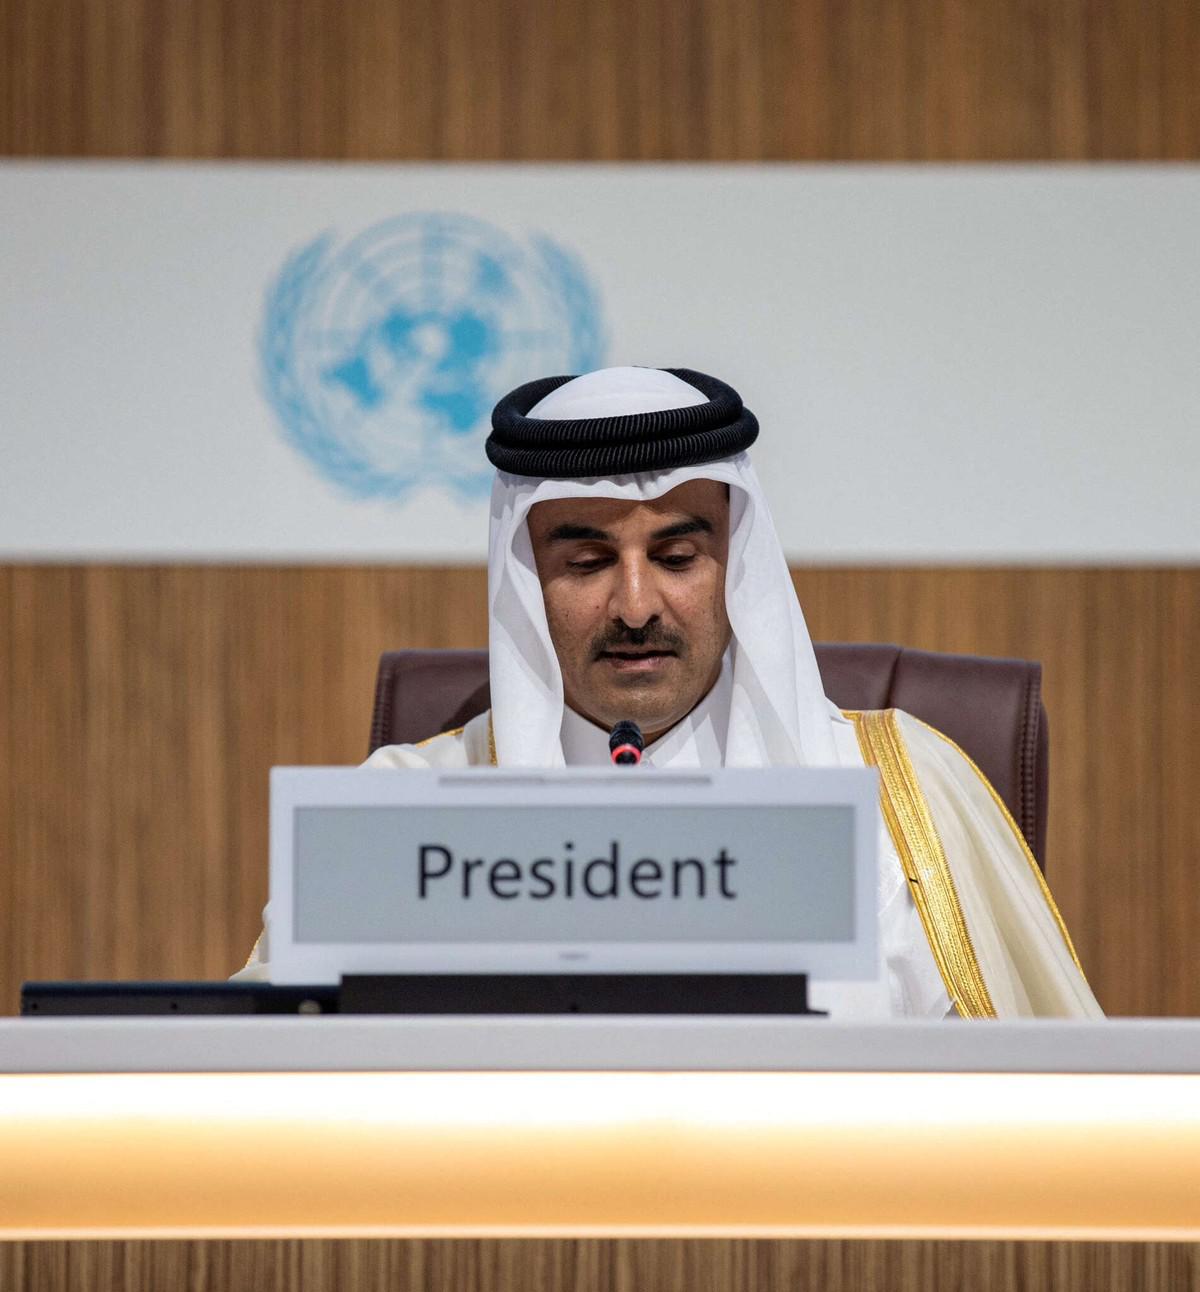 قطر تكاد تكون الدولة العربية الوحيدة لعودة سوريا الى الحضن العربي